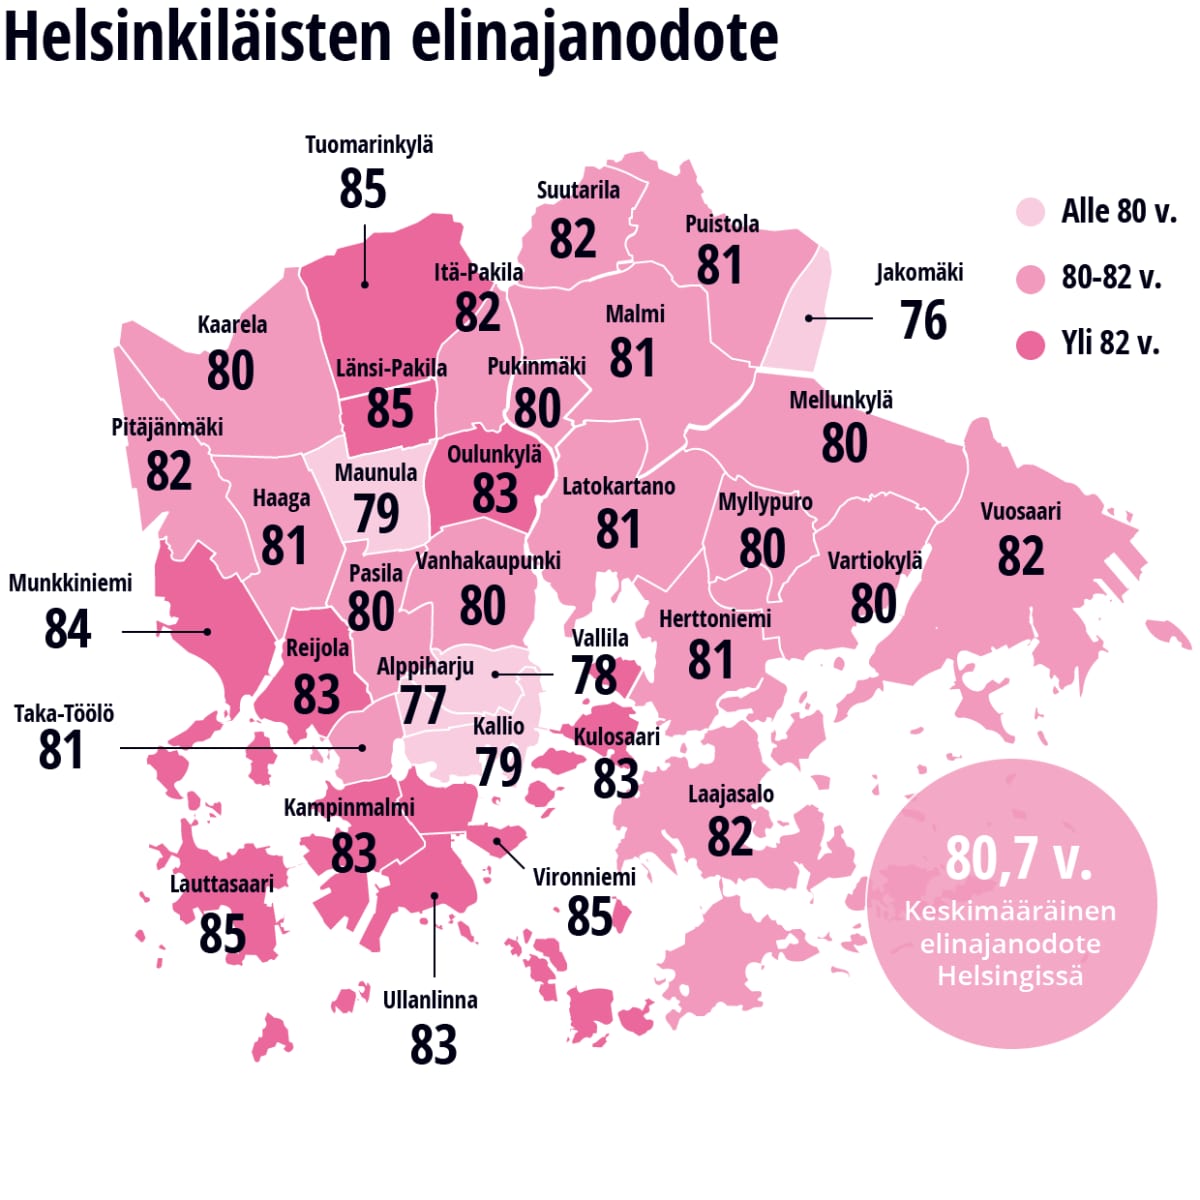 Helsinkiläisten elinajanodote -grafiikka.